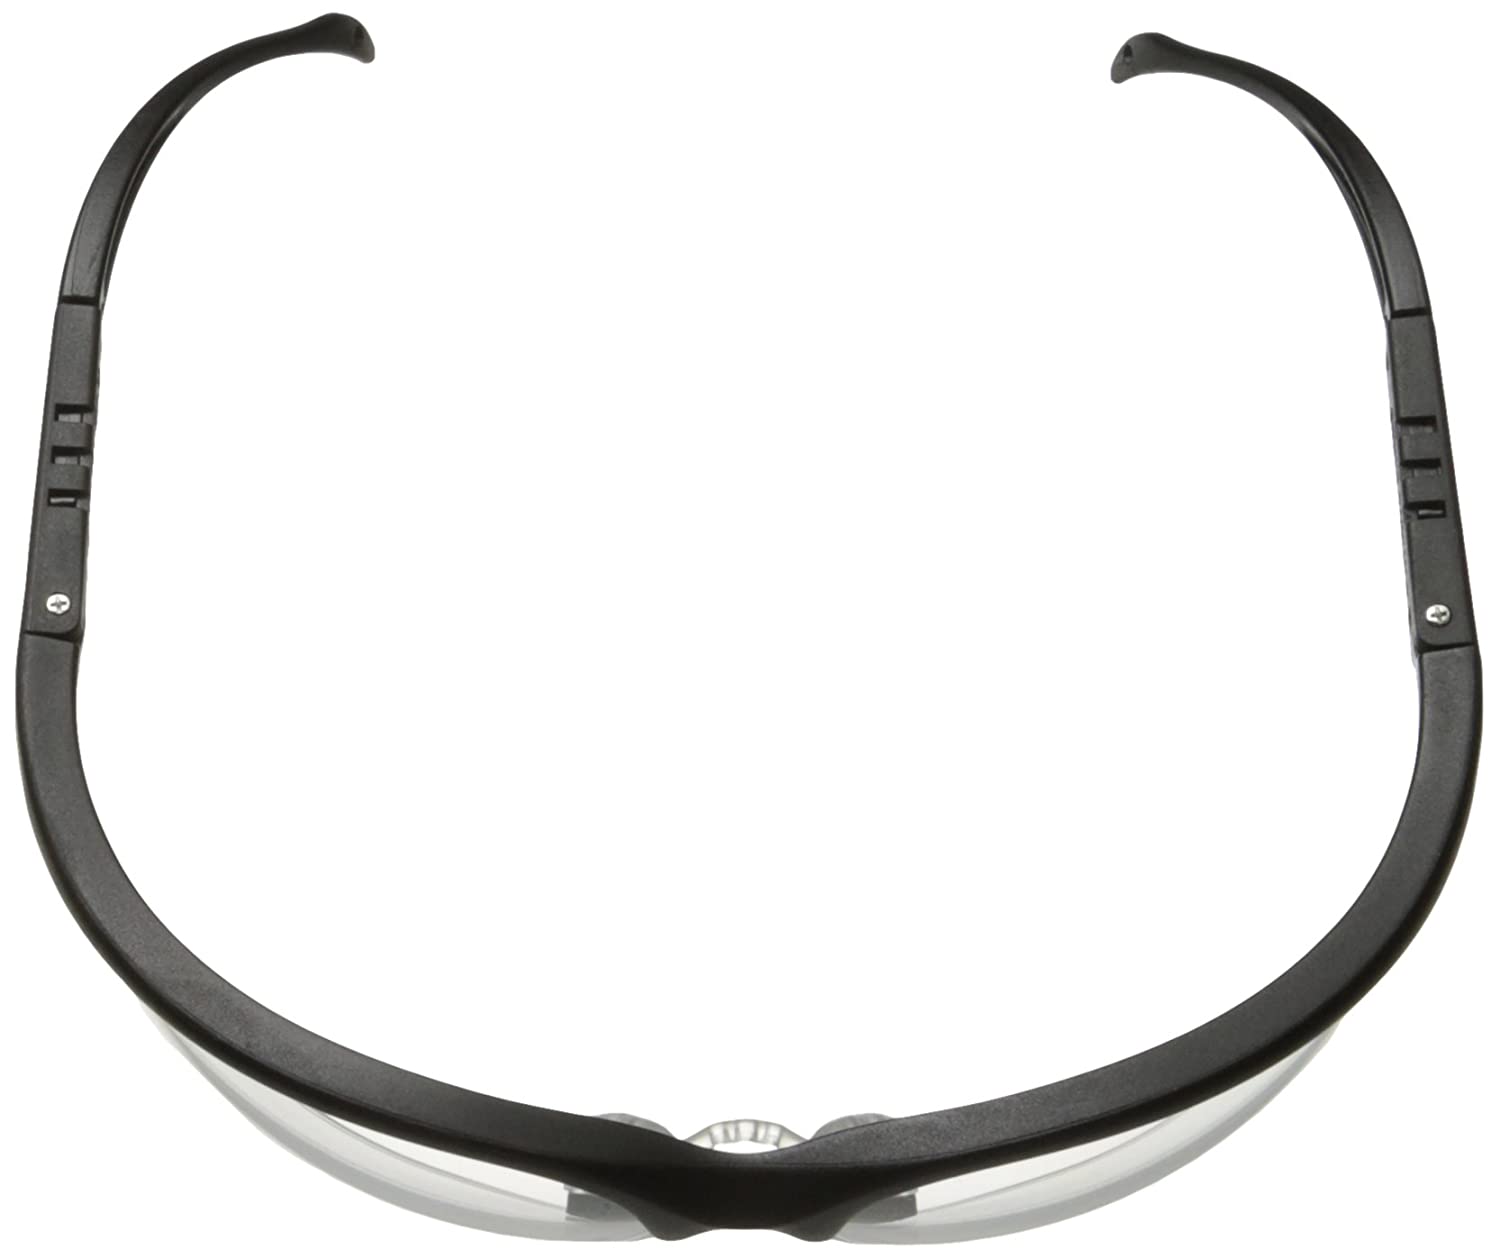 MCR Safety KD110 Klondike KD1 Series Black Safety Glasses